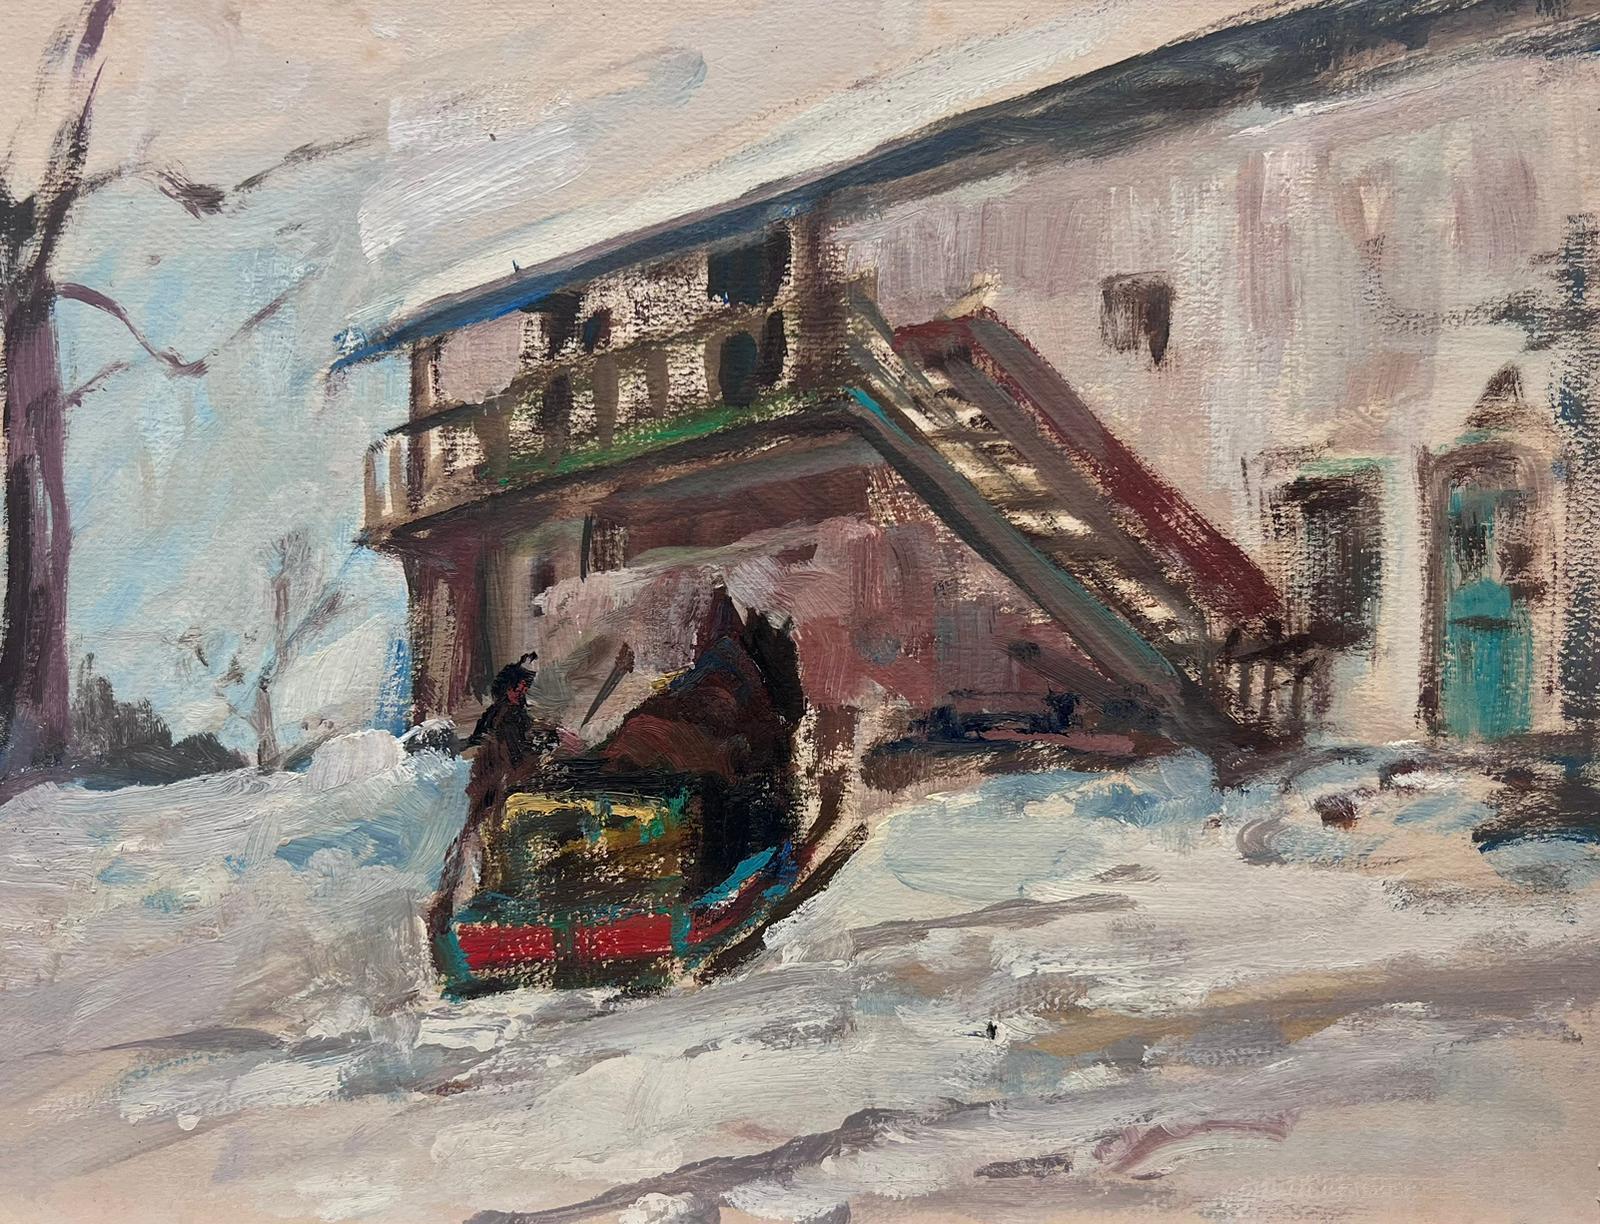 Figurative Painting Leon Hatot - Figures dans un paysage de ski d'hiver - Paysage - huile impressionniste français vintage